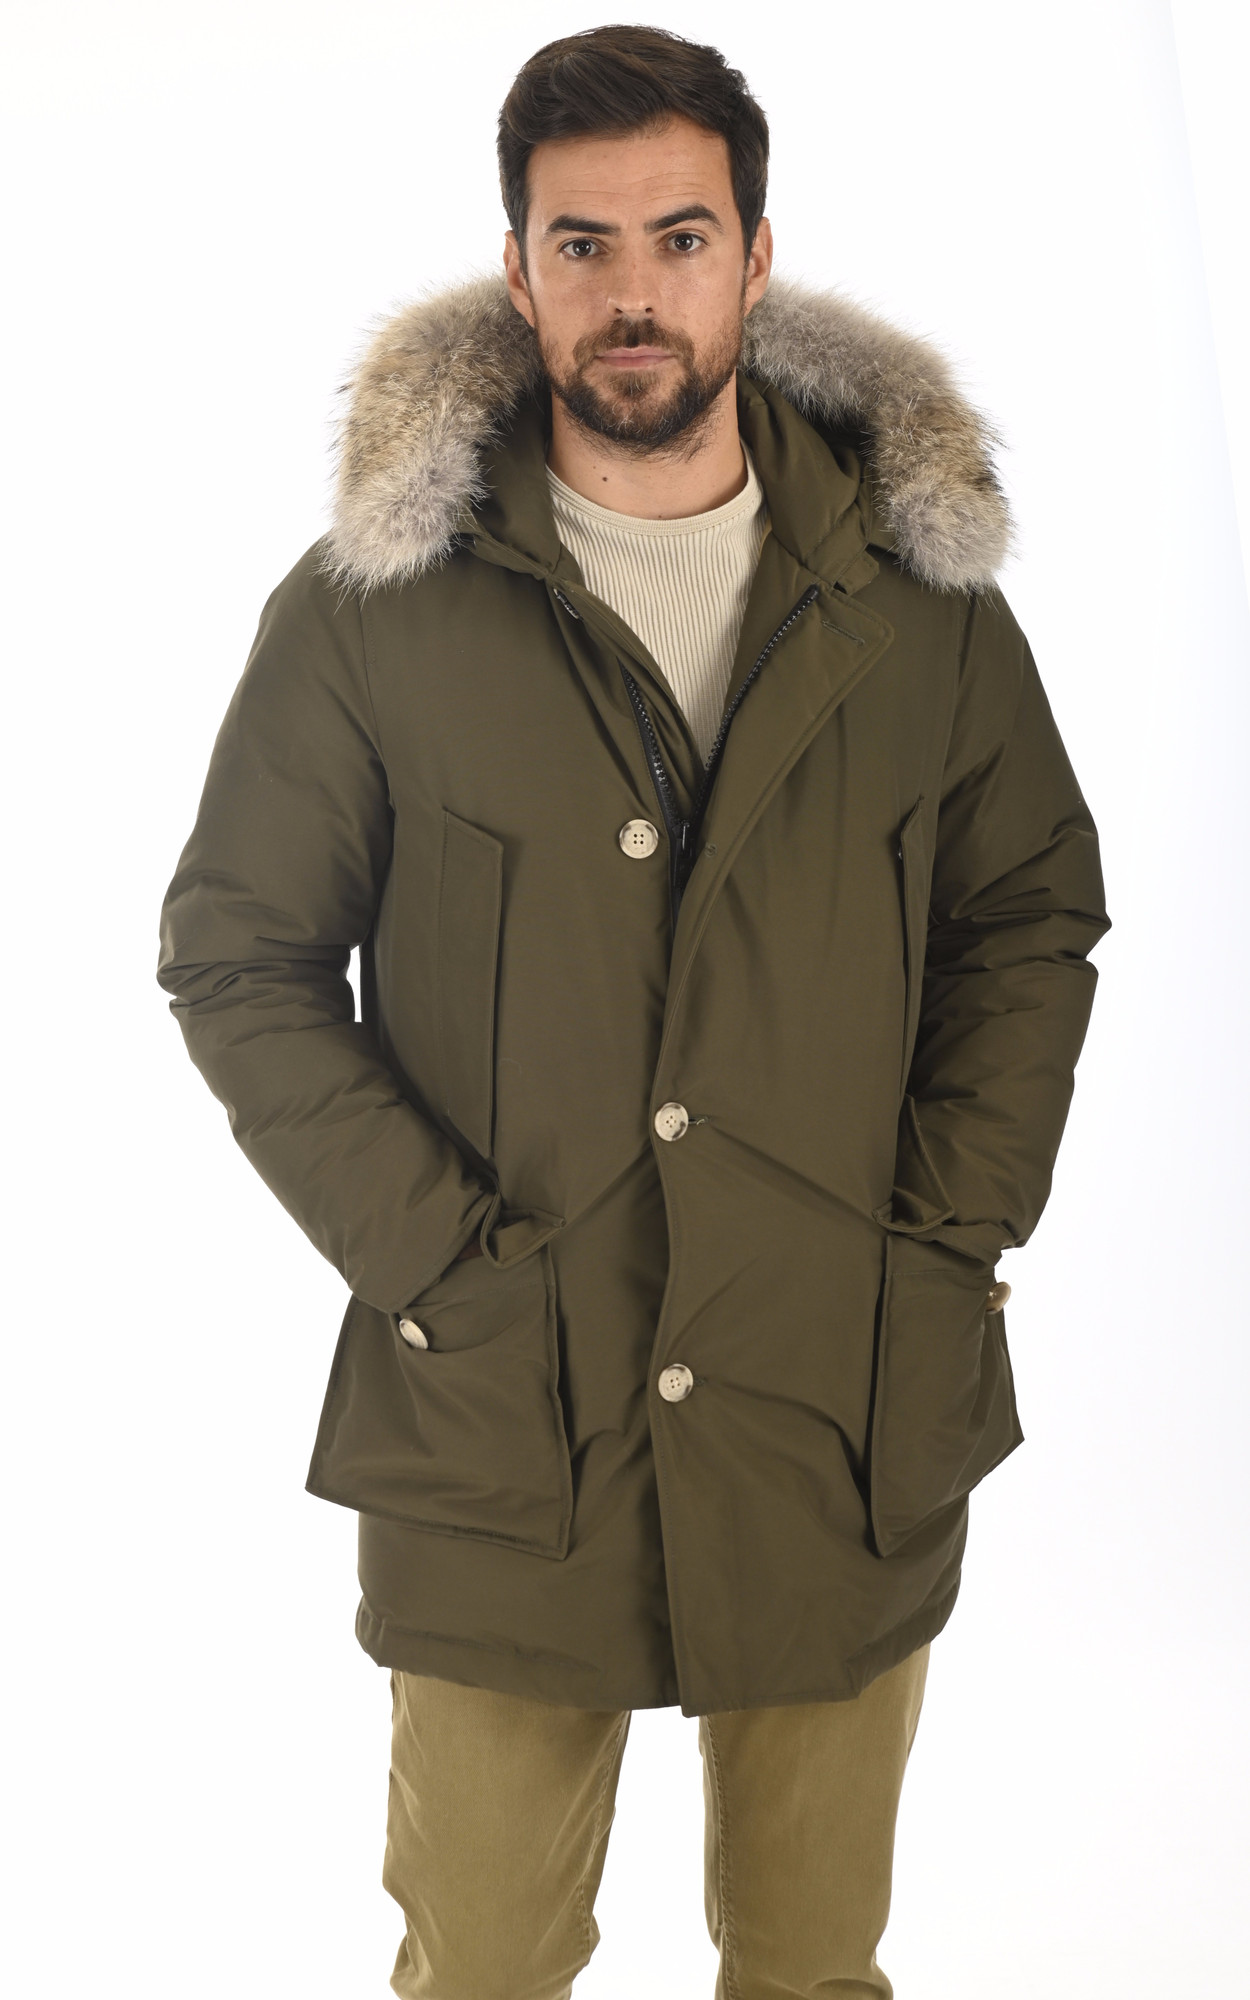 Winter jacket miinto-ce04f768e20b1a833bd7 Woolrich pour homme en coloris Noir Homme Vêtements Manteaux Parkas 